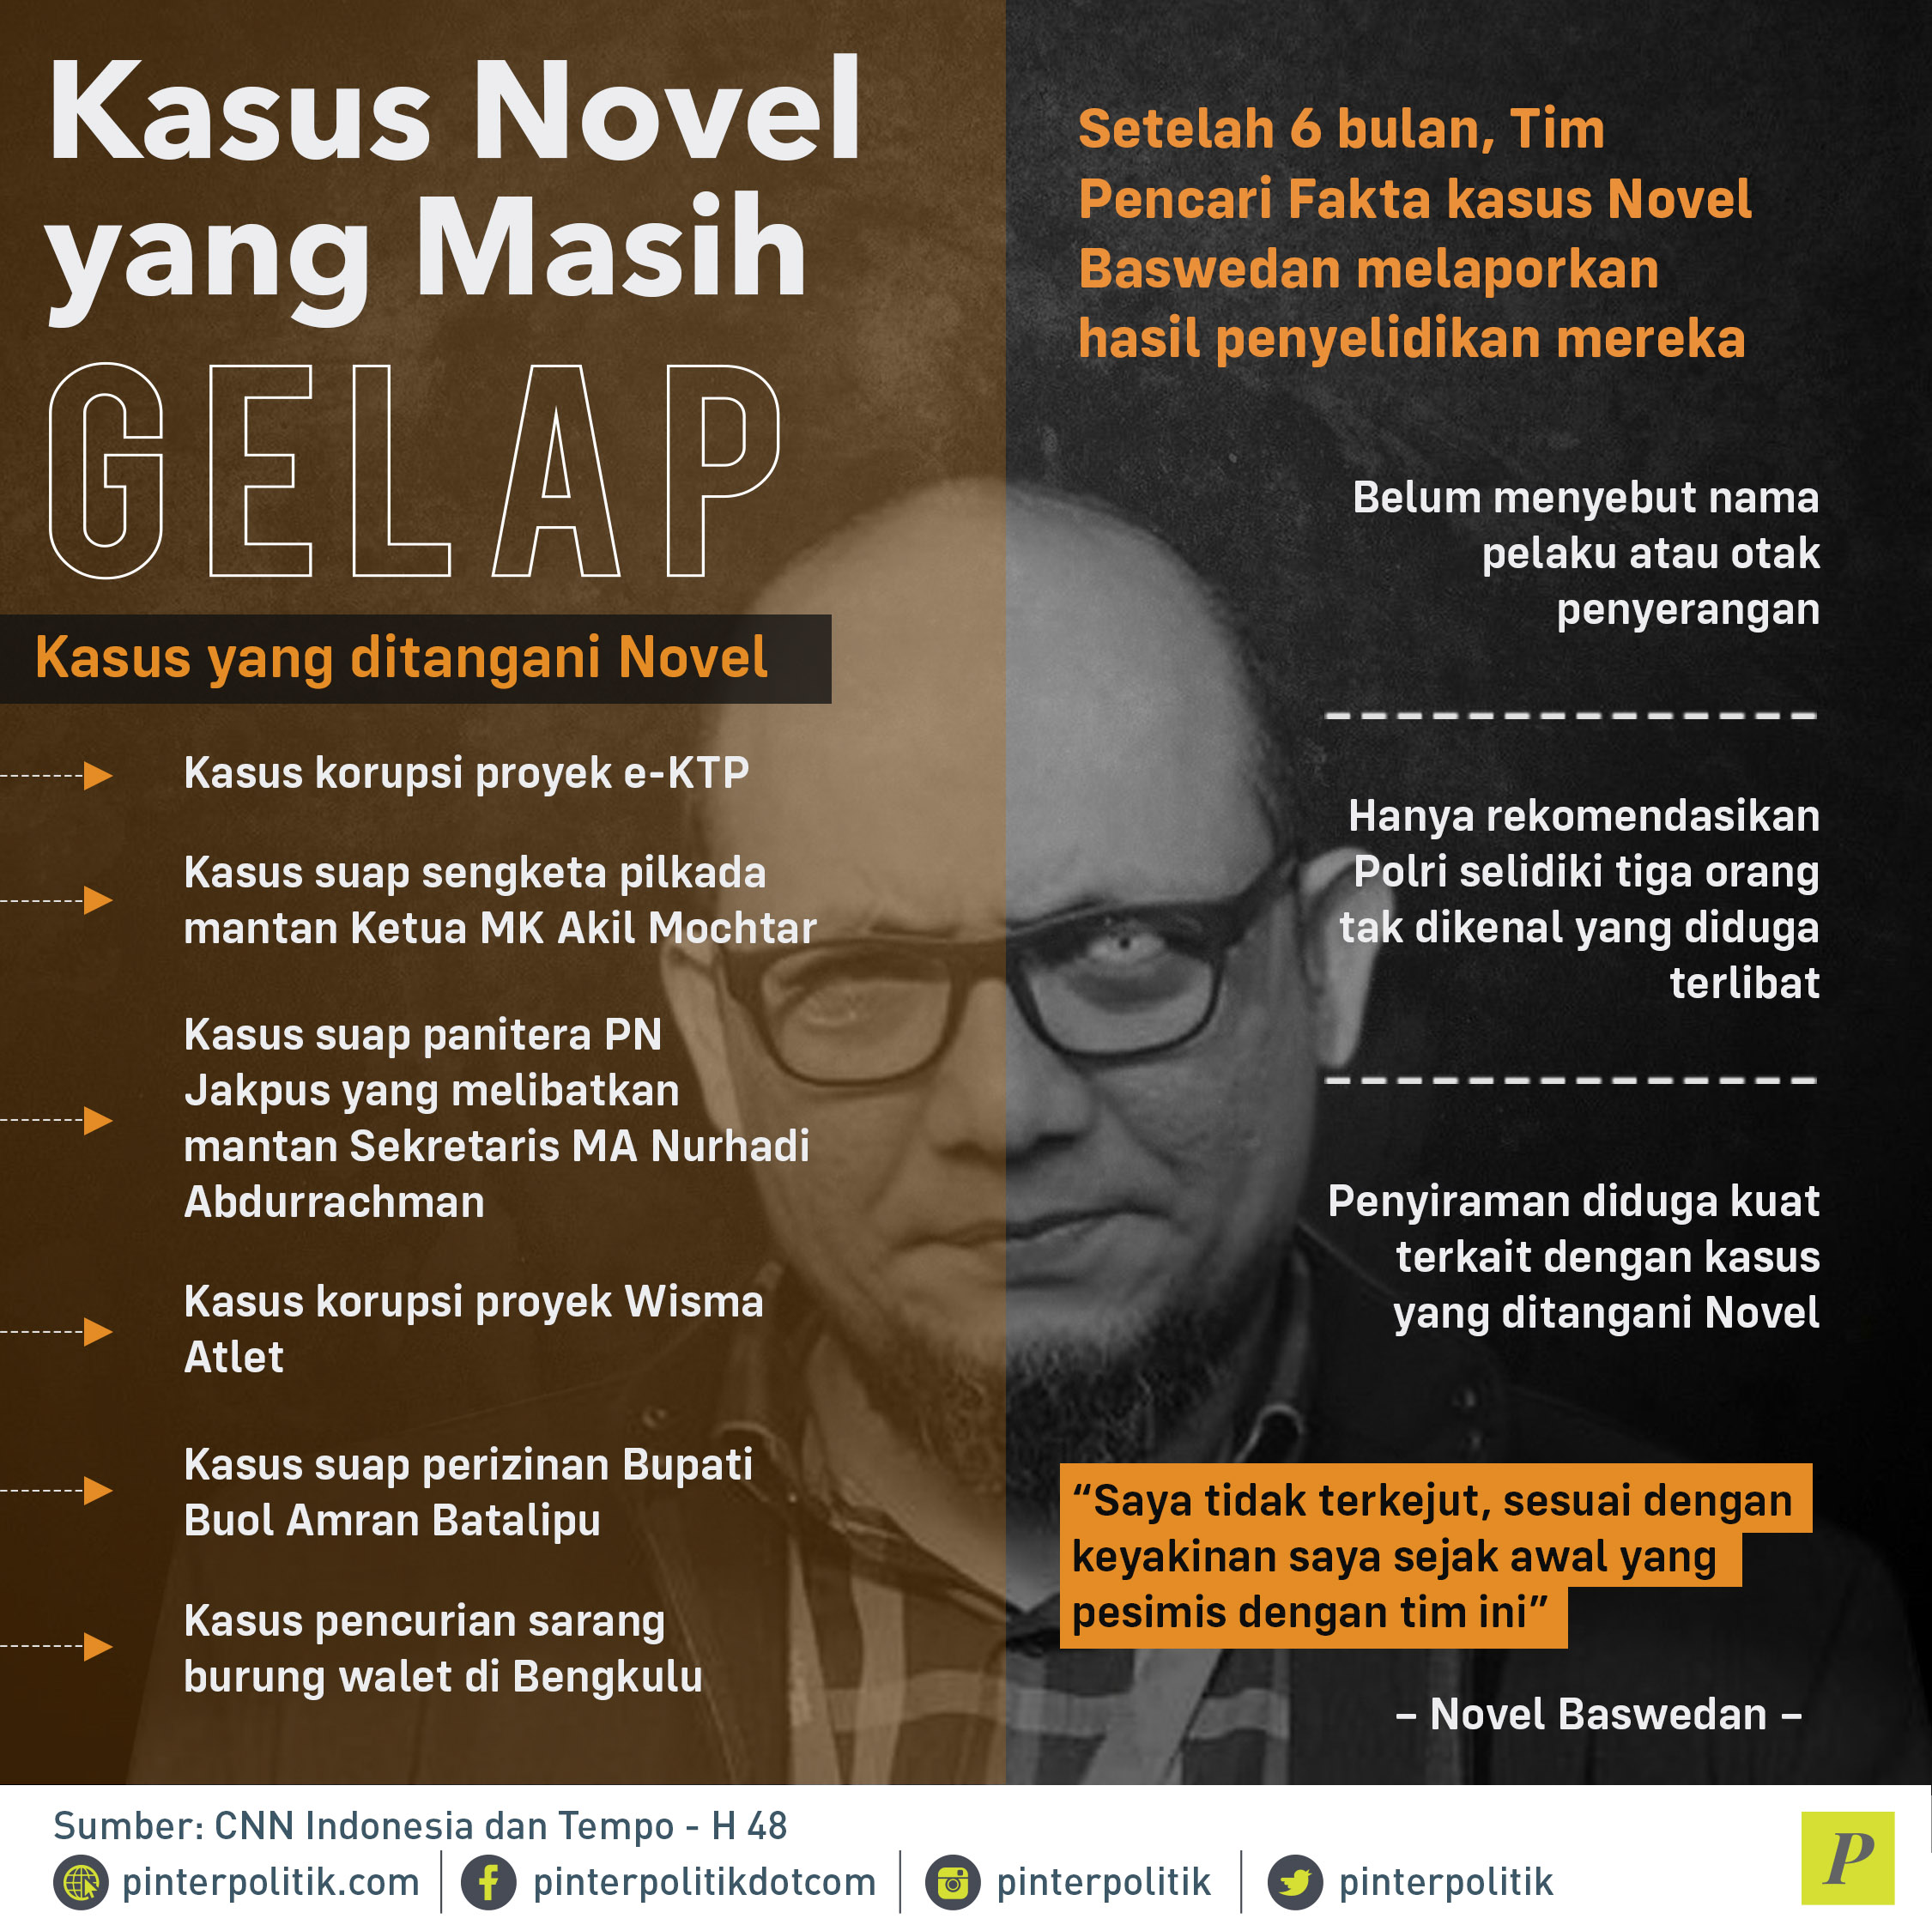 Tim Pencari Fakta kasus Novel Baswedan